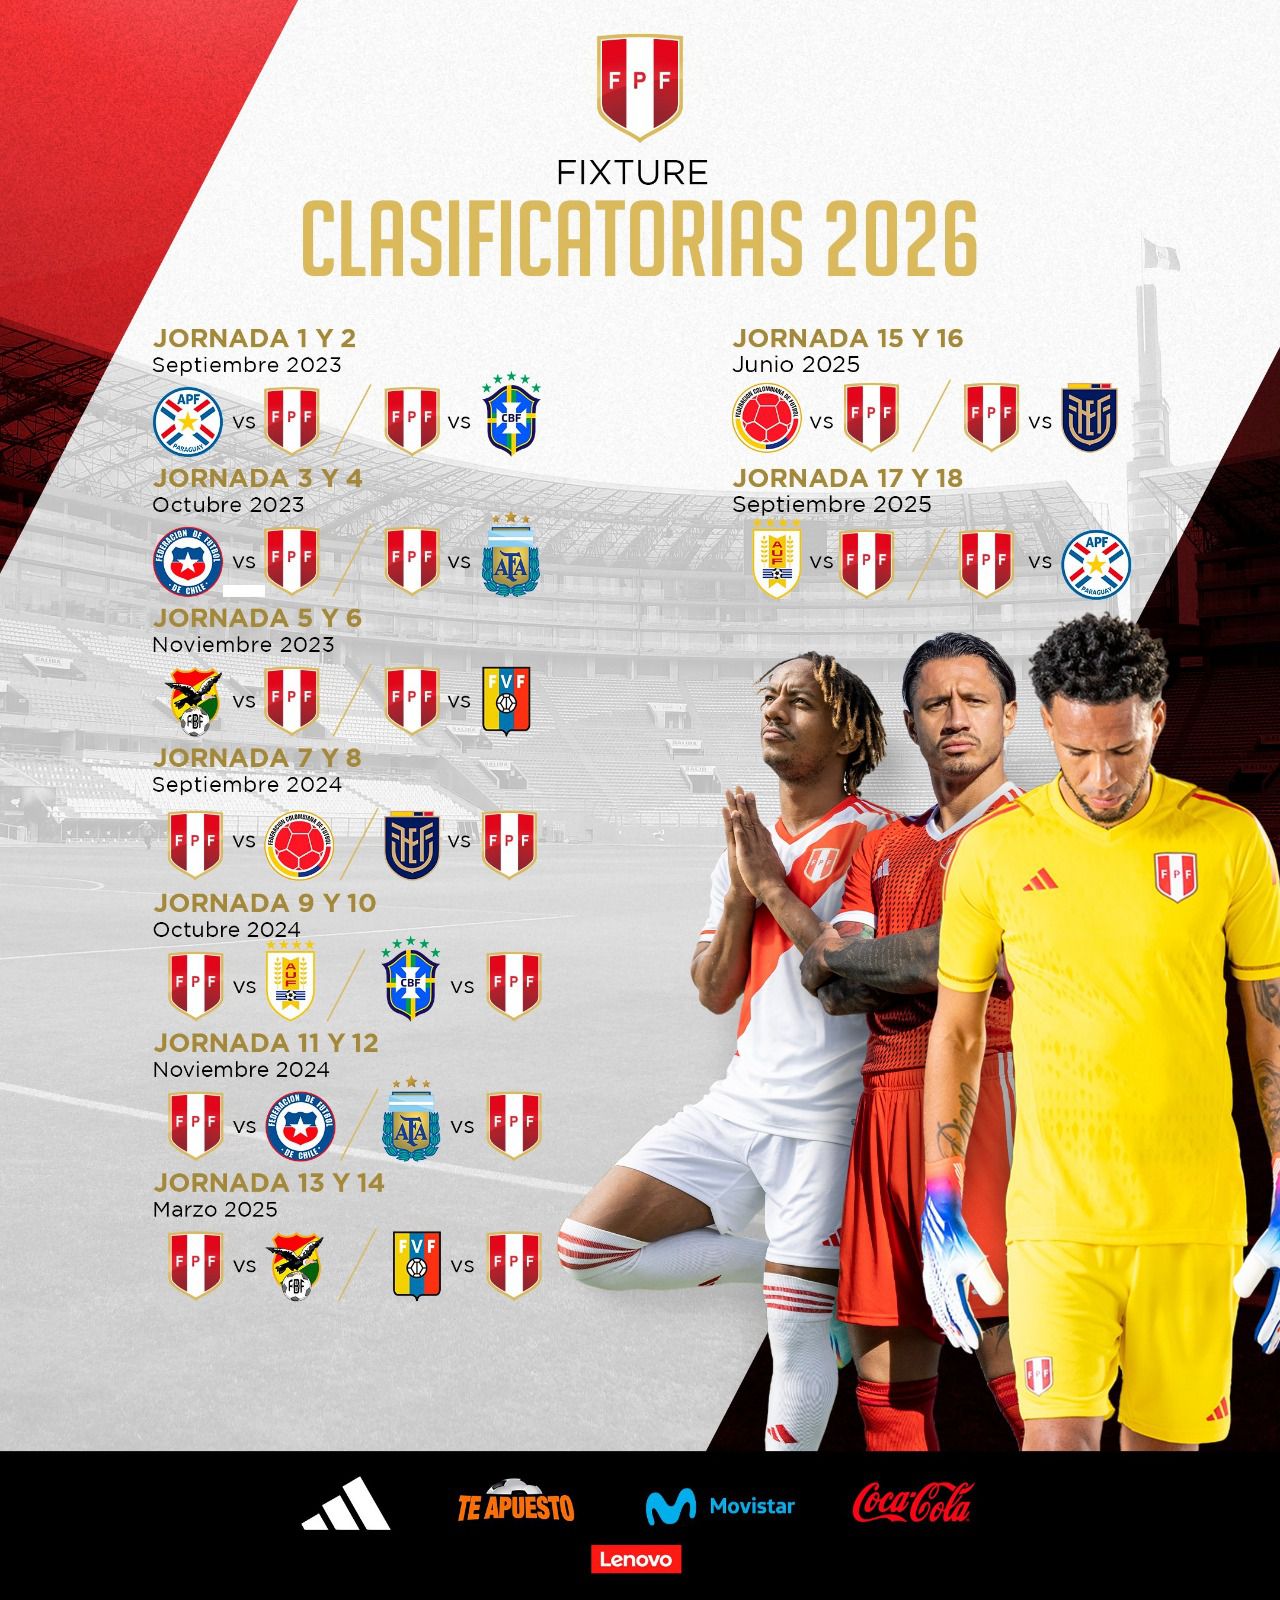 Fixture de la selección peruana en las Eliminatorias Sudamericanas 2026. (FPF)